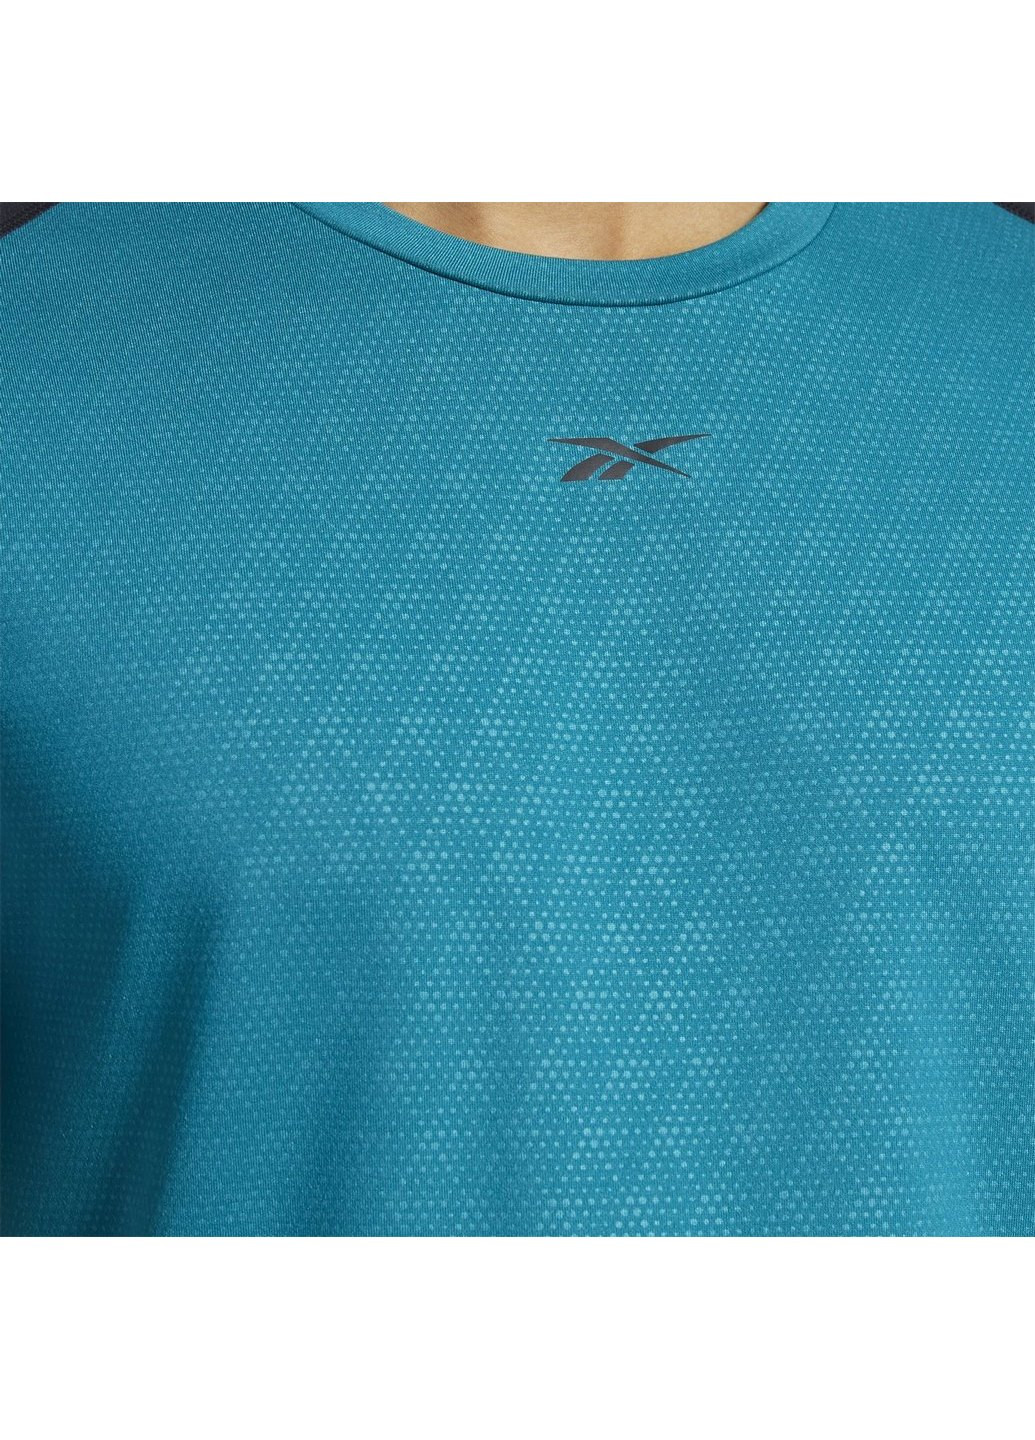 Голубая мужская спортивная футболка smartvent fk6346 Reebok